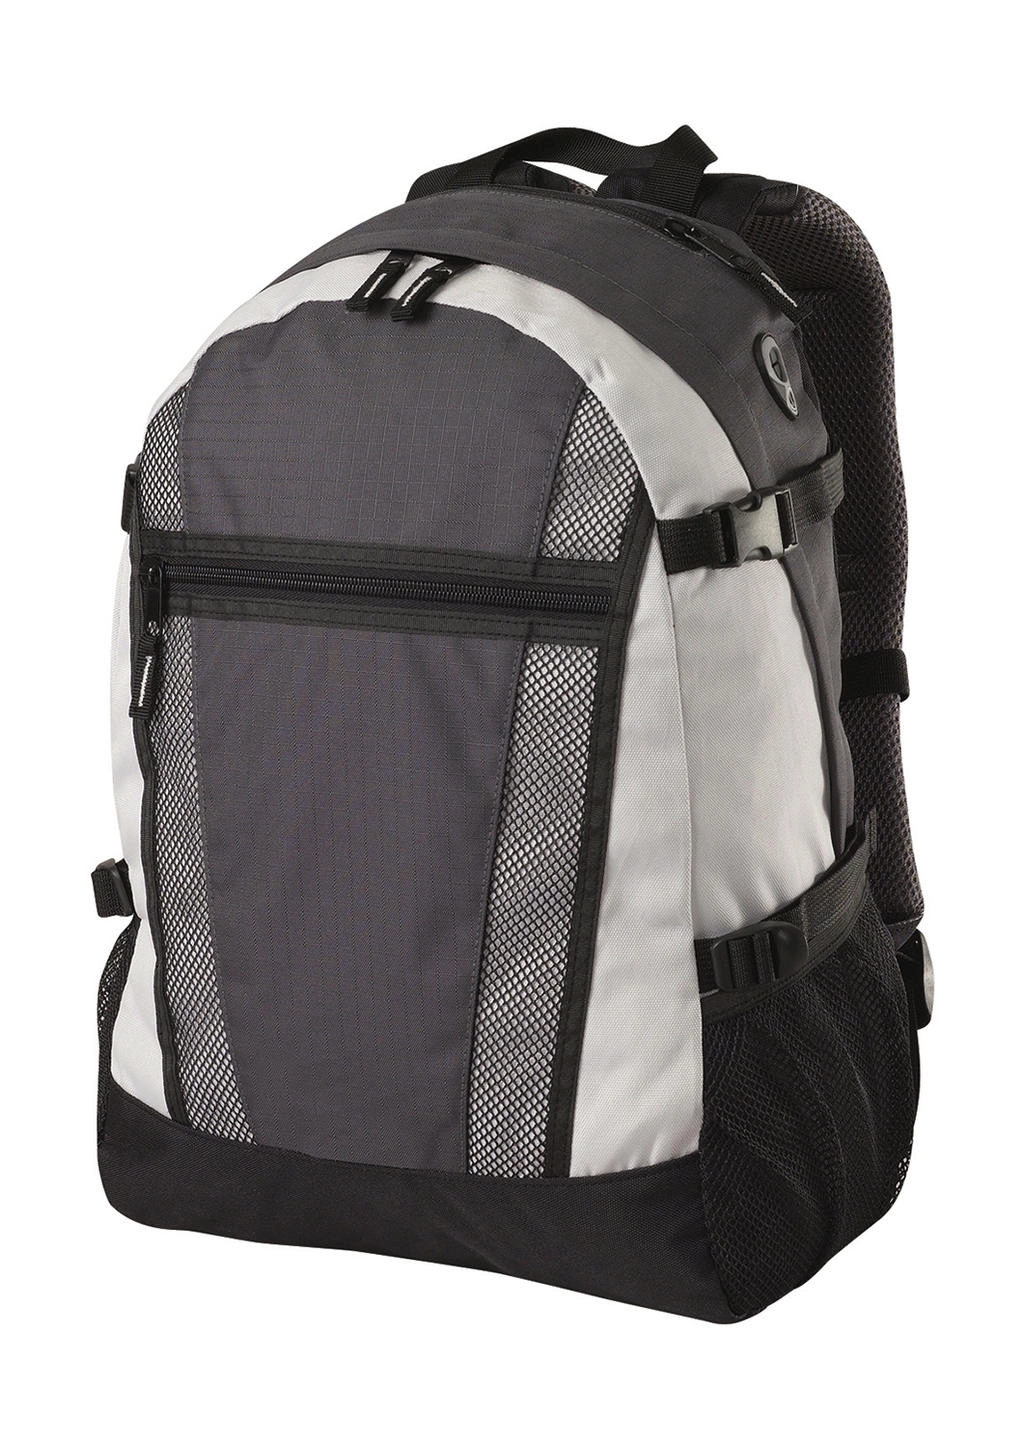 Indiana Student/ Sports Backpack zum Besticken und Bedrucken in der Farbe Dark Grey/Off White mit Ihren Logo, Schriftzug oder Motiv.